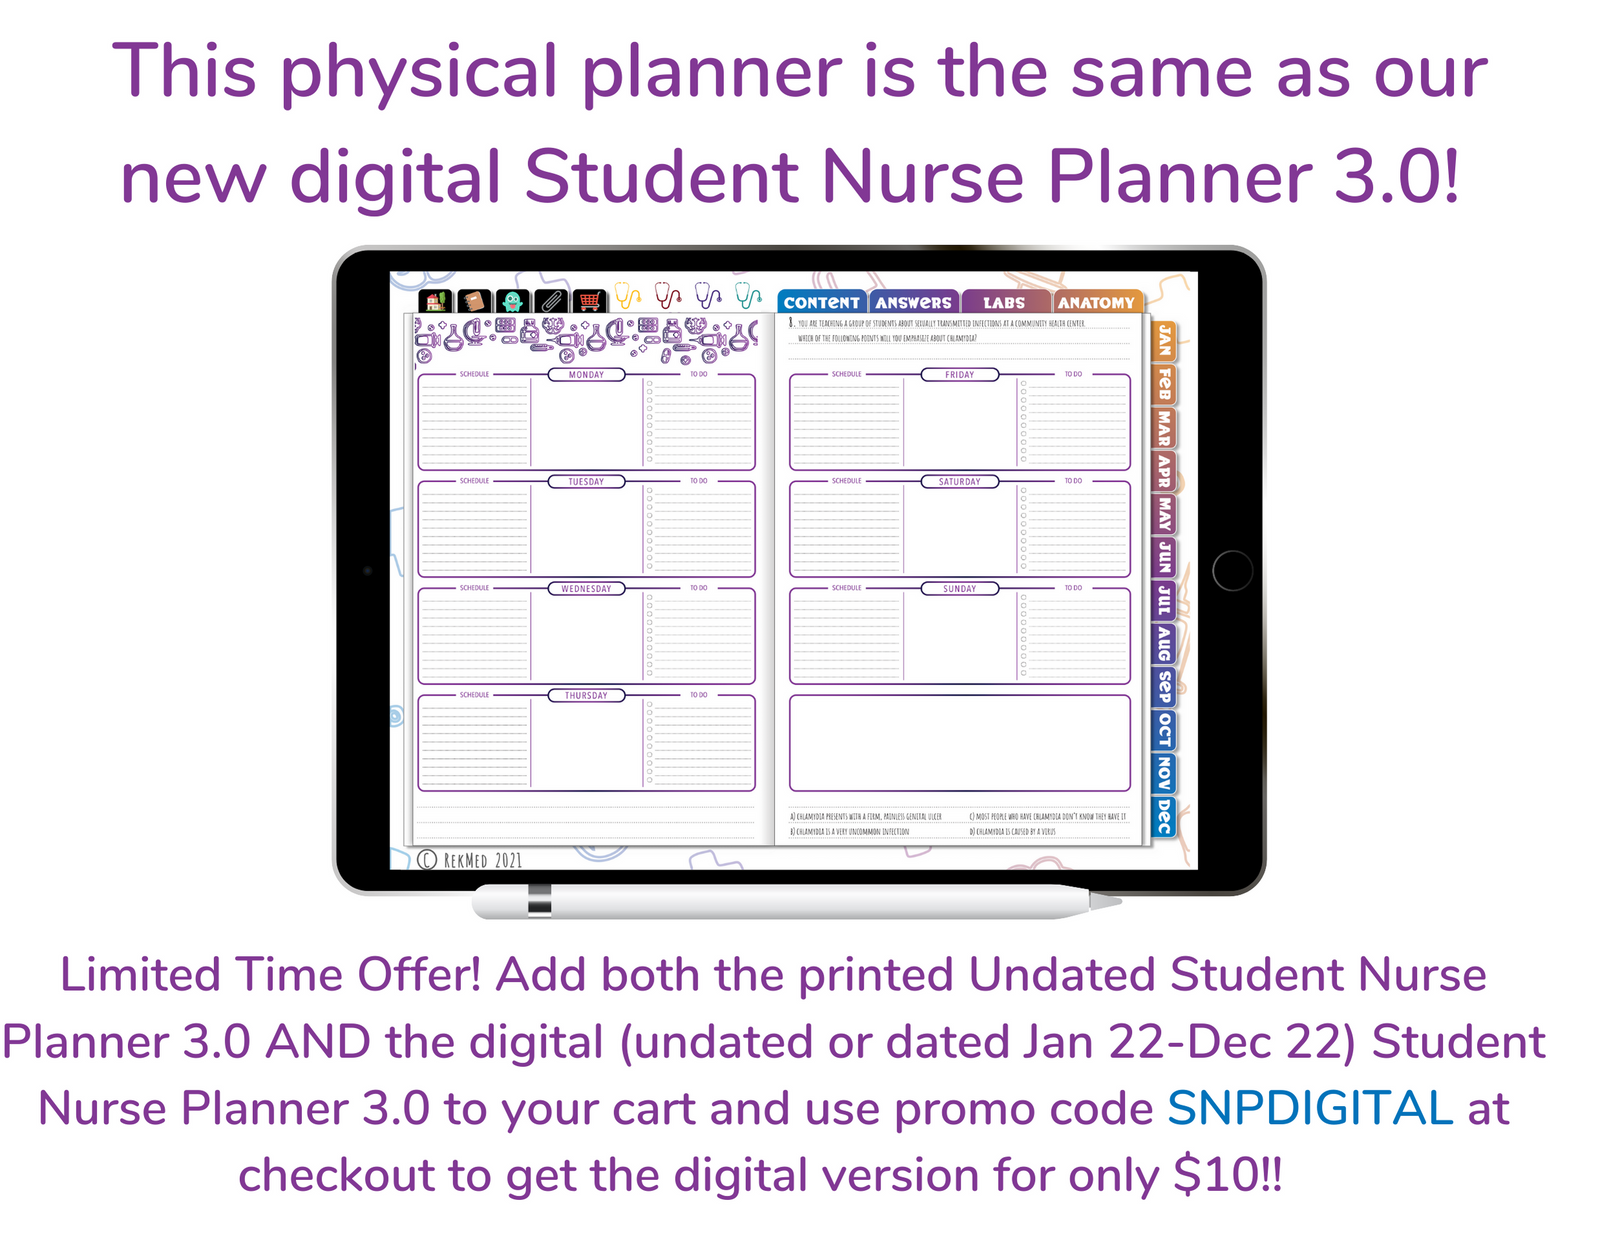 UNDATED (NO DATES) Student Nurse Planner 3.0